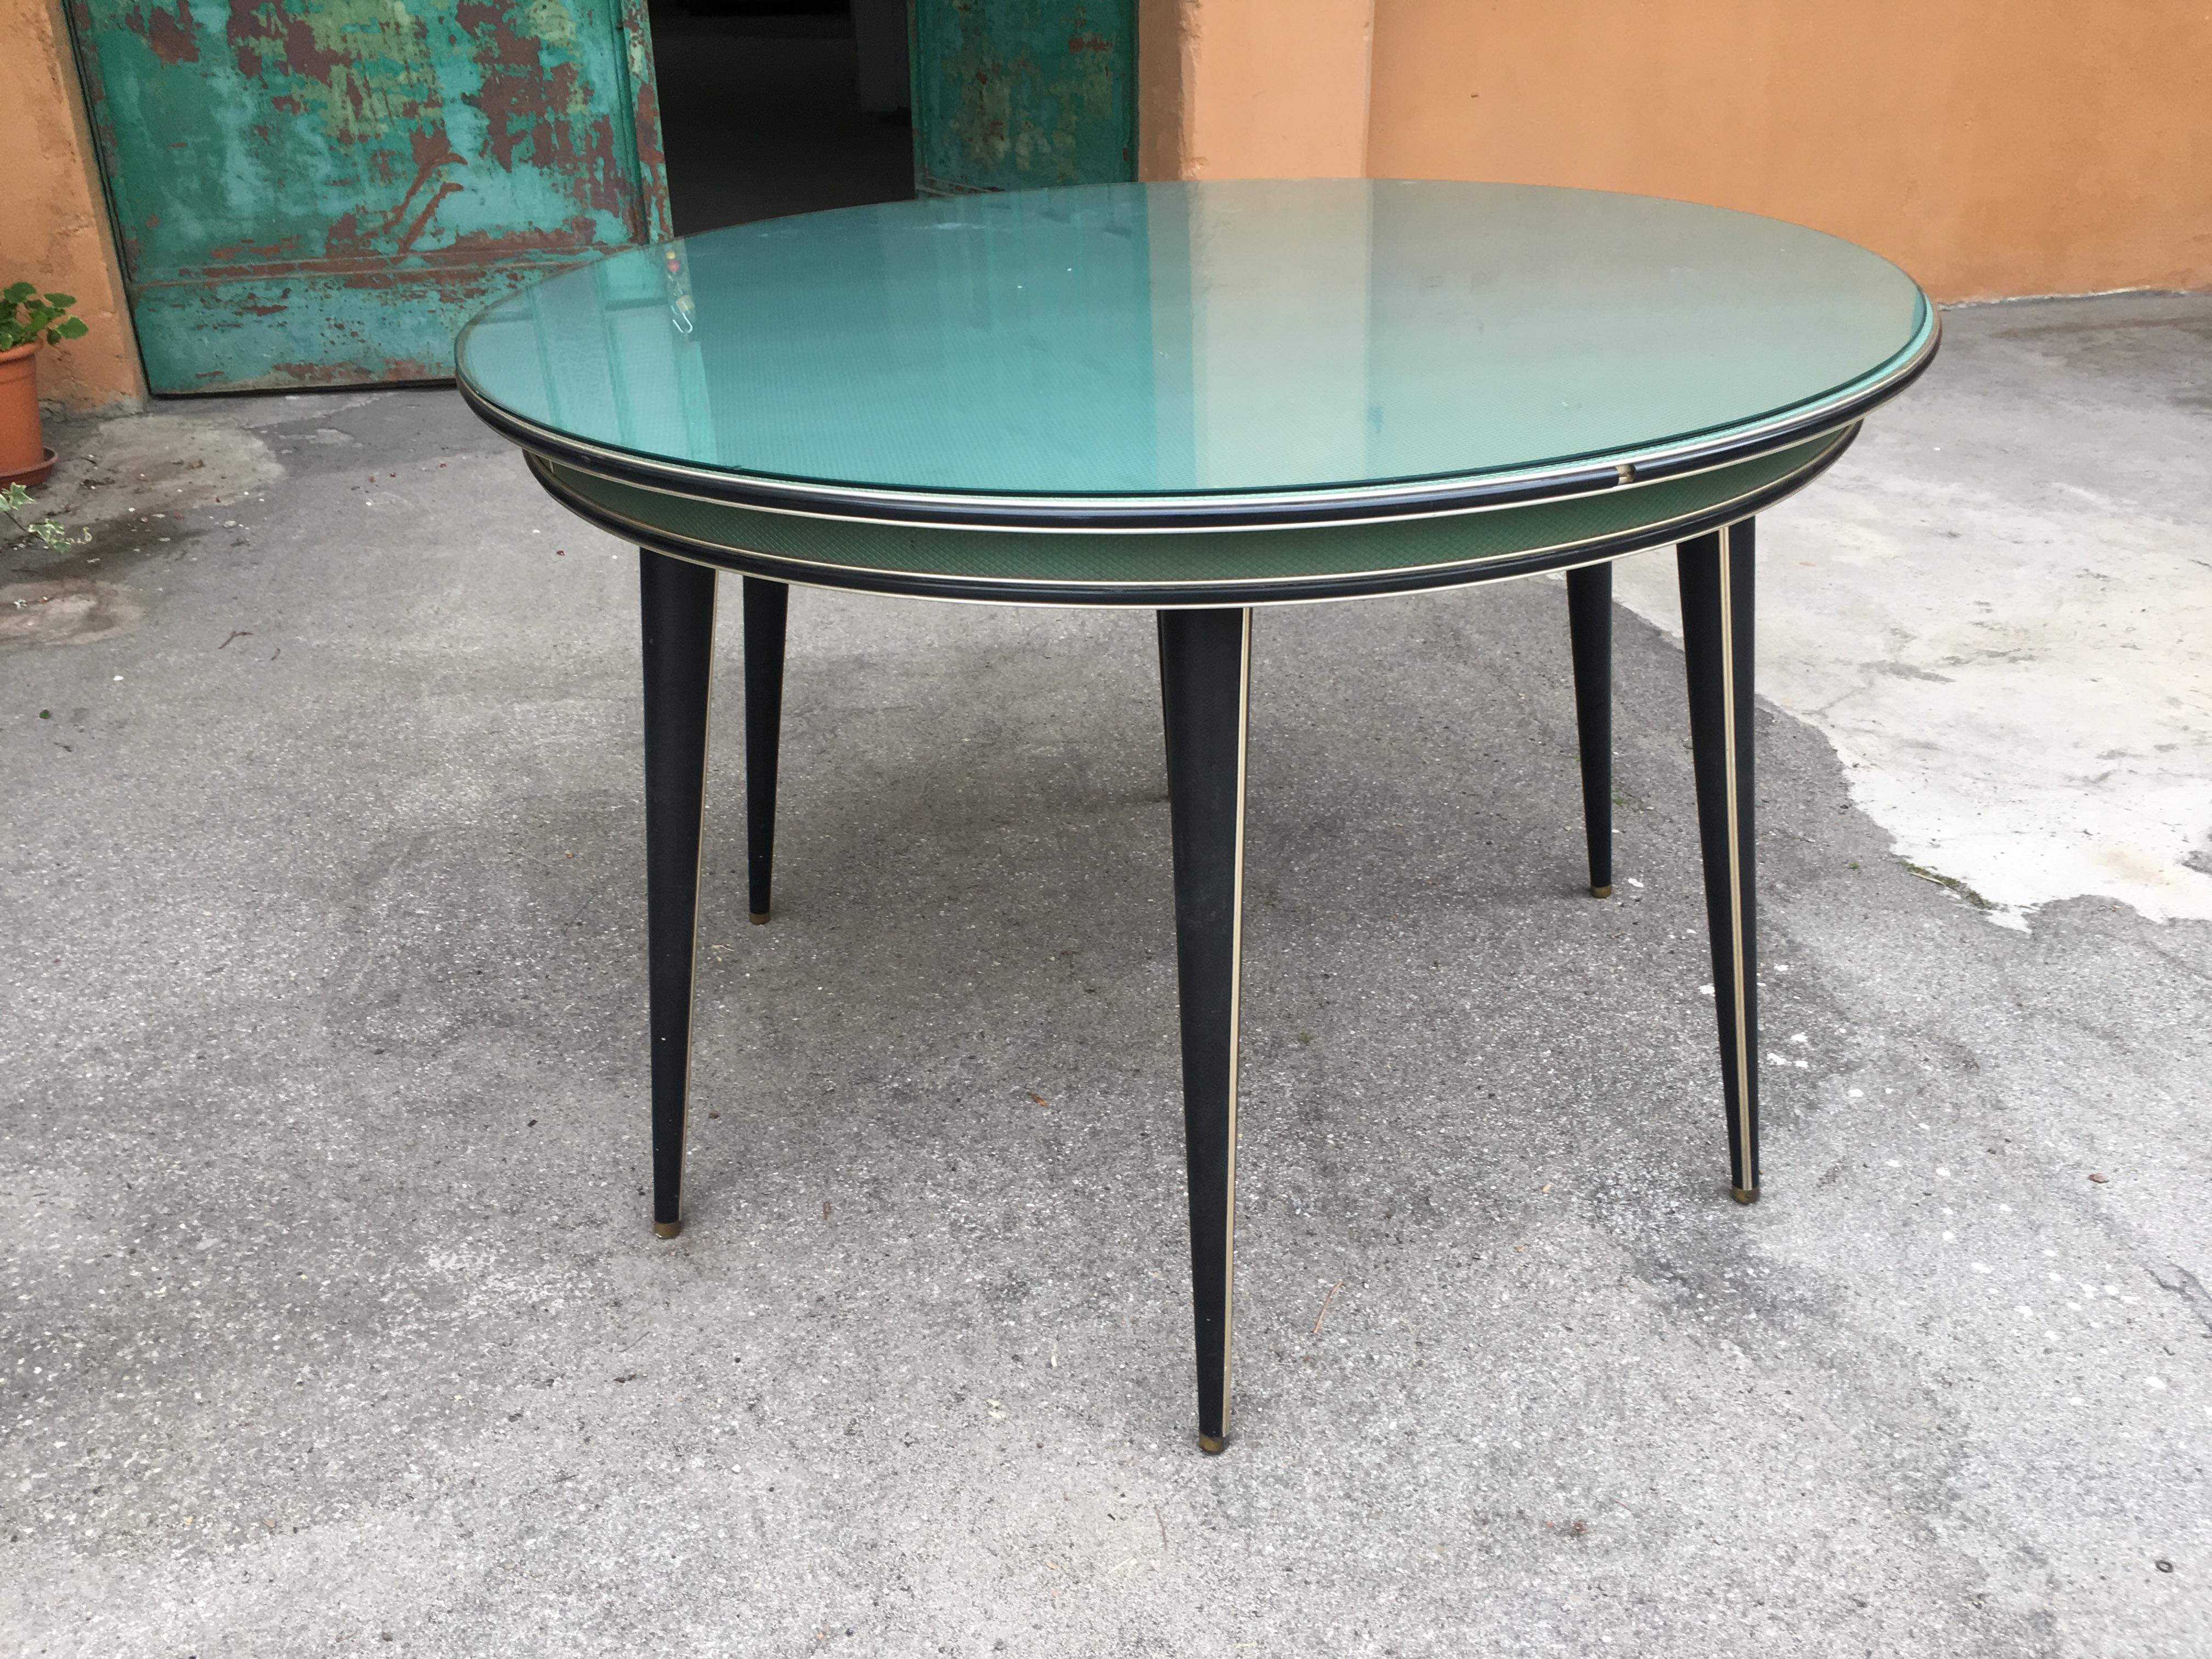 Moderner italienischer runder Tisch mit sechs Beinen in Grün und Schwarz von Umberto Mascagni aus der Jahrhundertmitte.
Die Tischplatte ist aus Kunstleder und mit Glas überzogen und wird mit einer grünen Stoffhülle geliefert, wie auf den Fotos zu